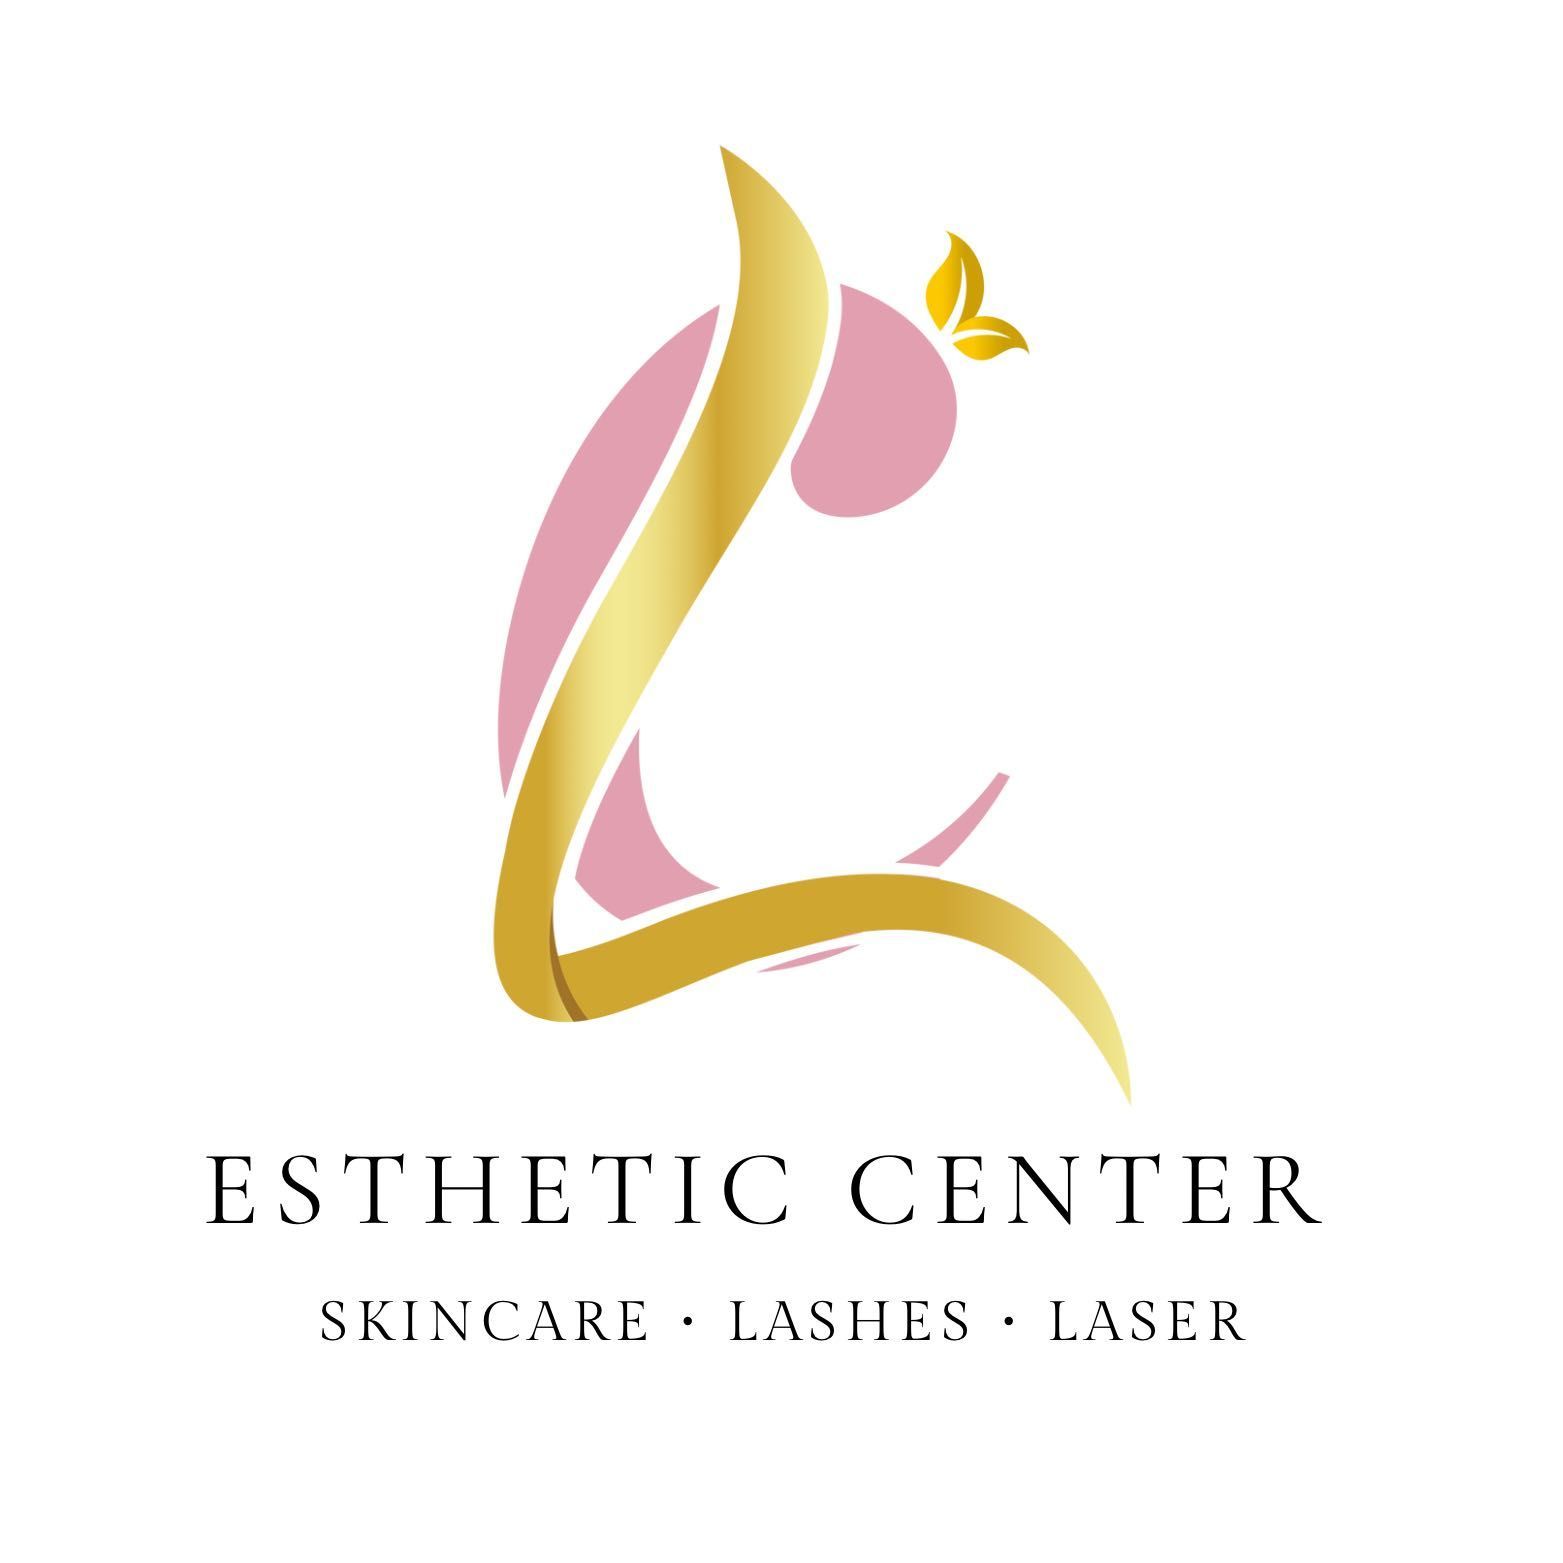 LC Esthetic Center, 4108 S Orange Blossom Trl, Kissimmee, 34746